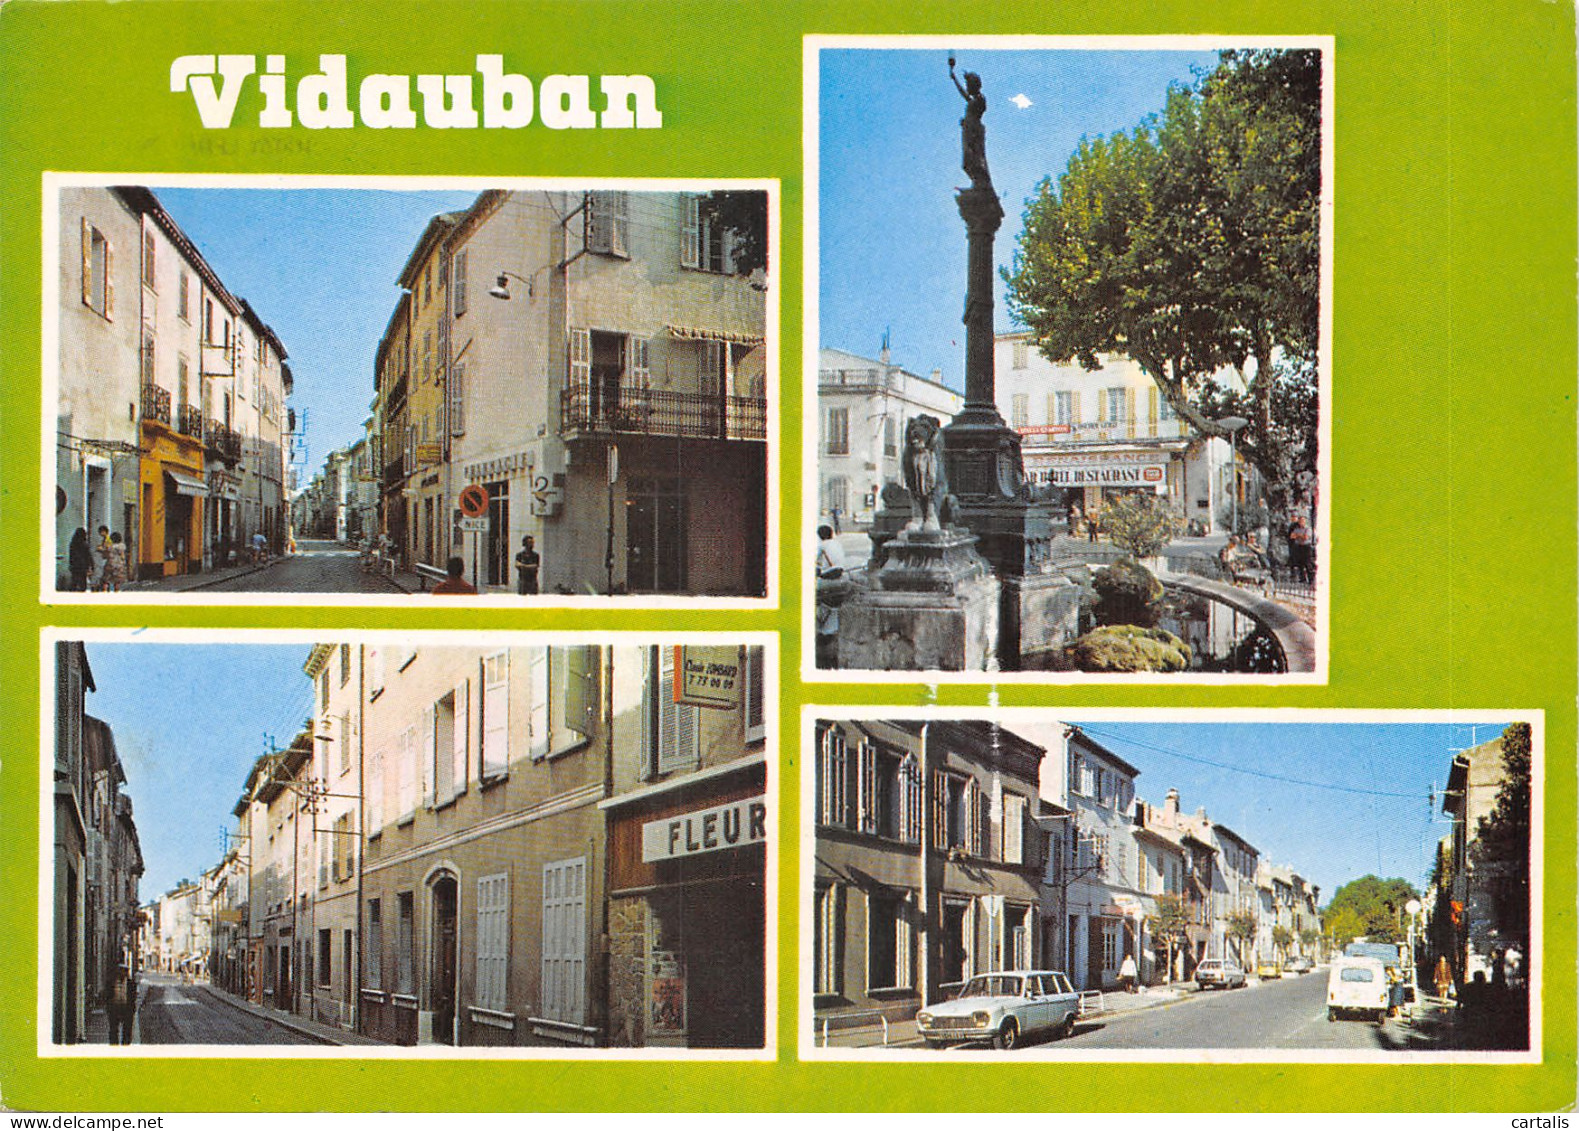 83-VIDAUBAN-N 594-B/0081 - Vidauban